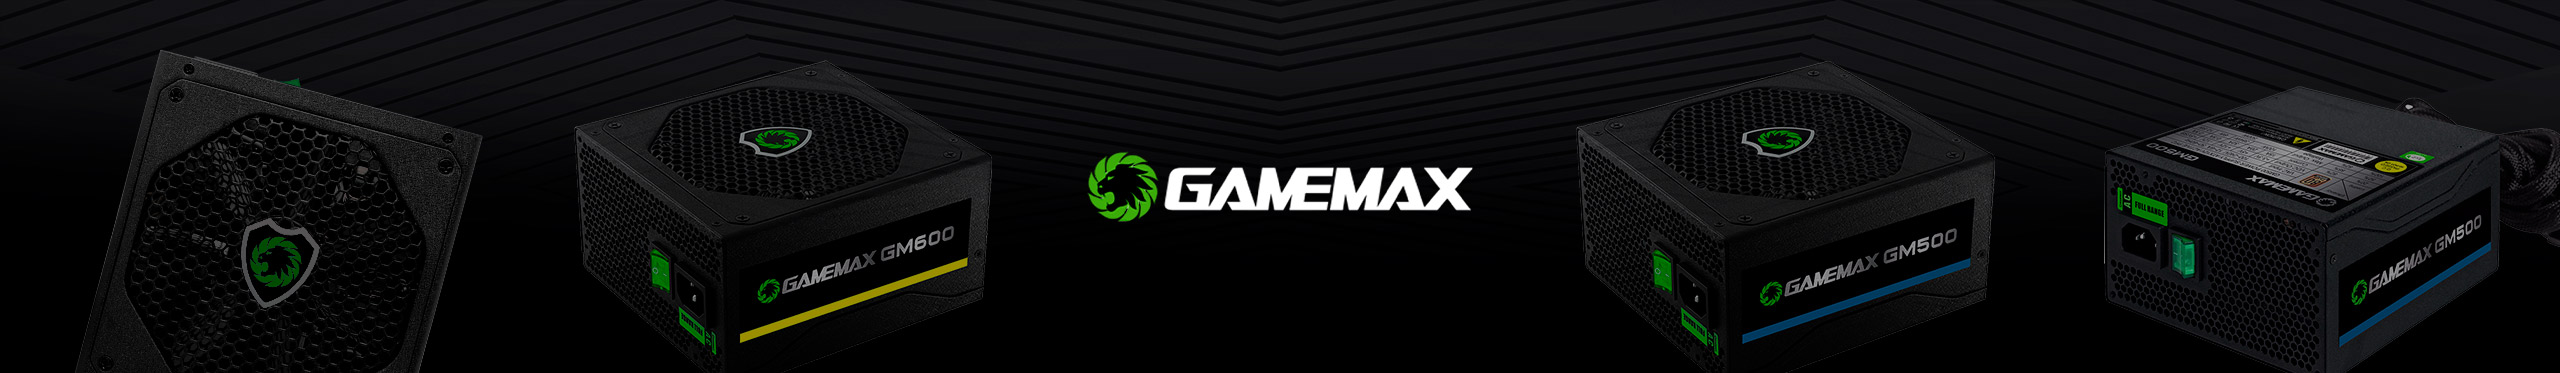 Alto desempenho, segurança e durabilidade só poderia ser com as Fontes Gamemax.